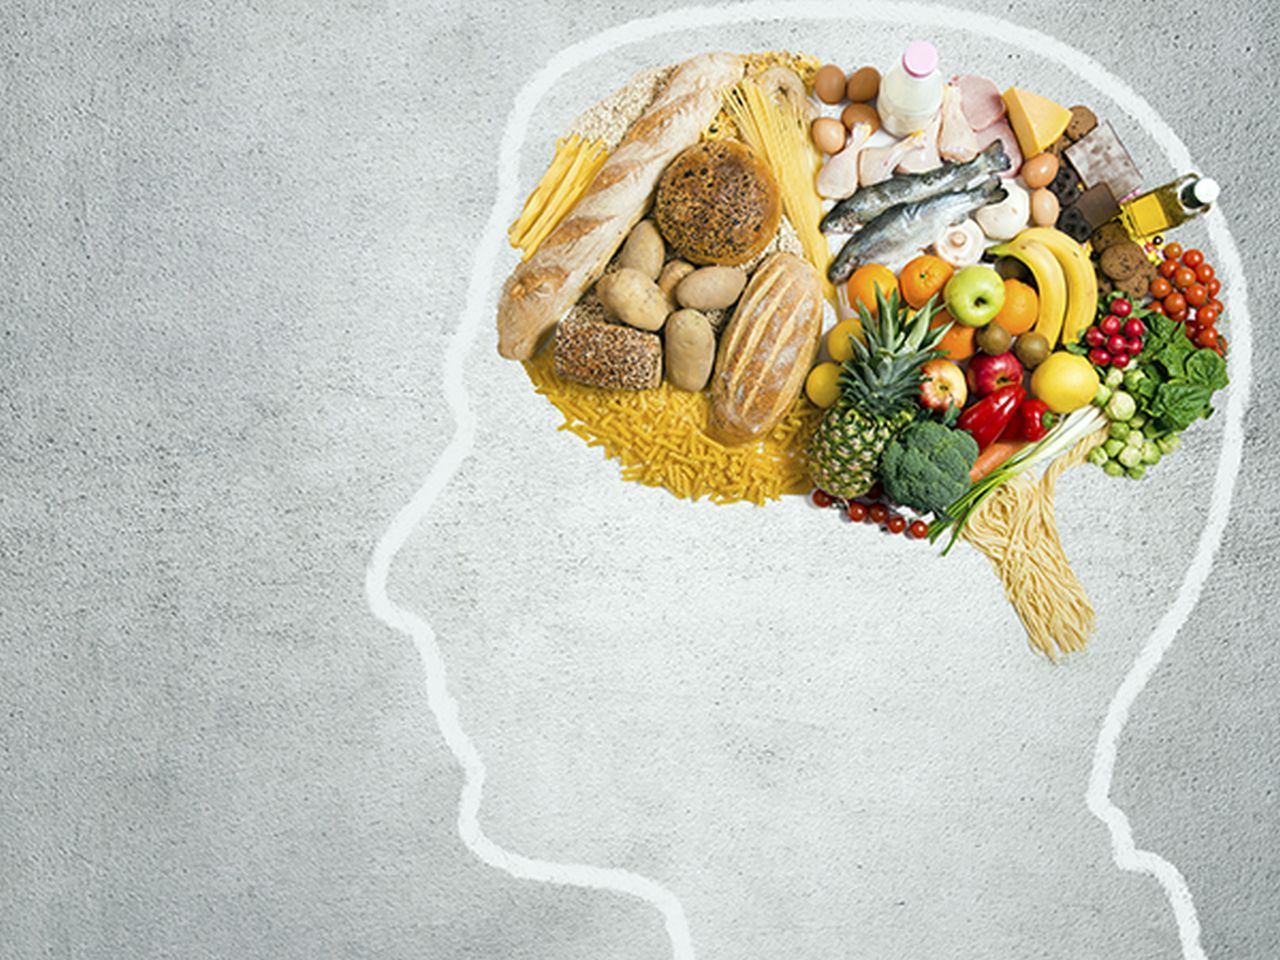 Medic: Cu toții mâncăm aceste alimente, dar ele afectează memoria